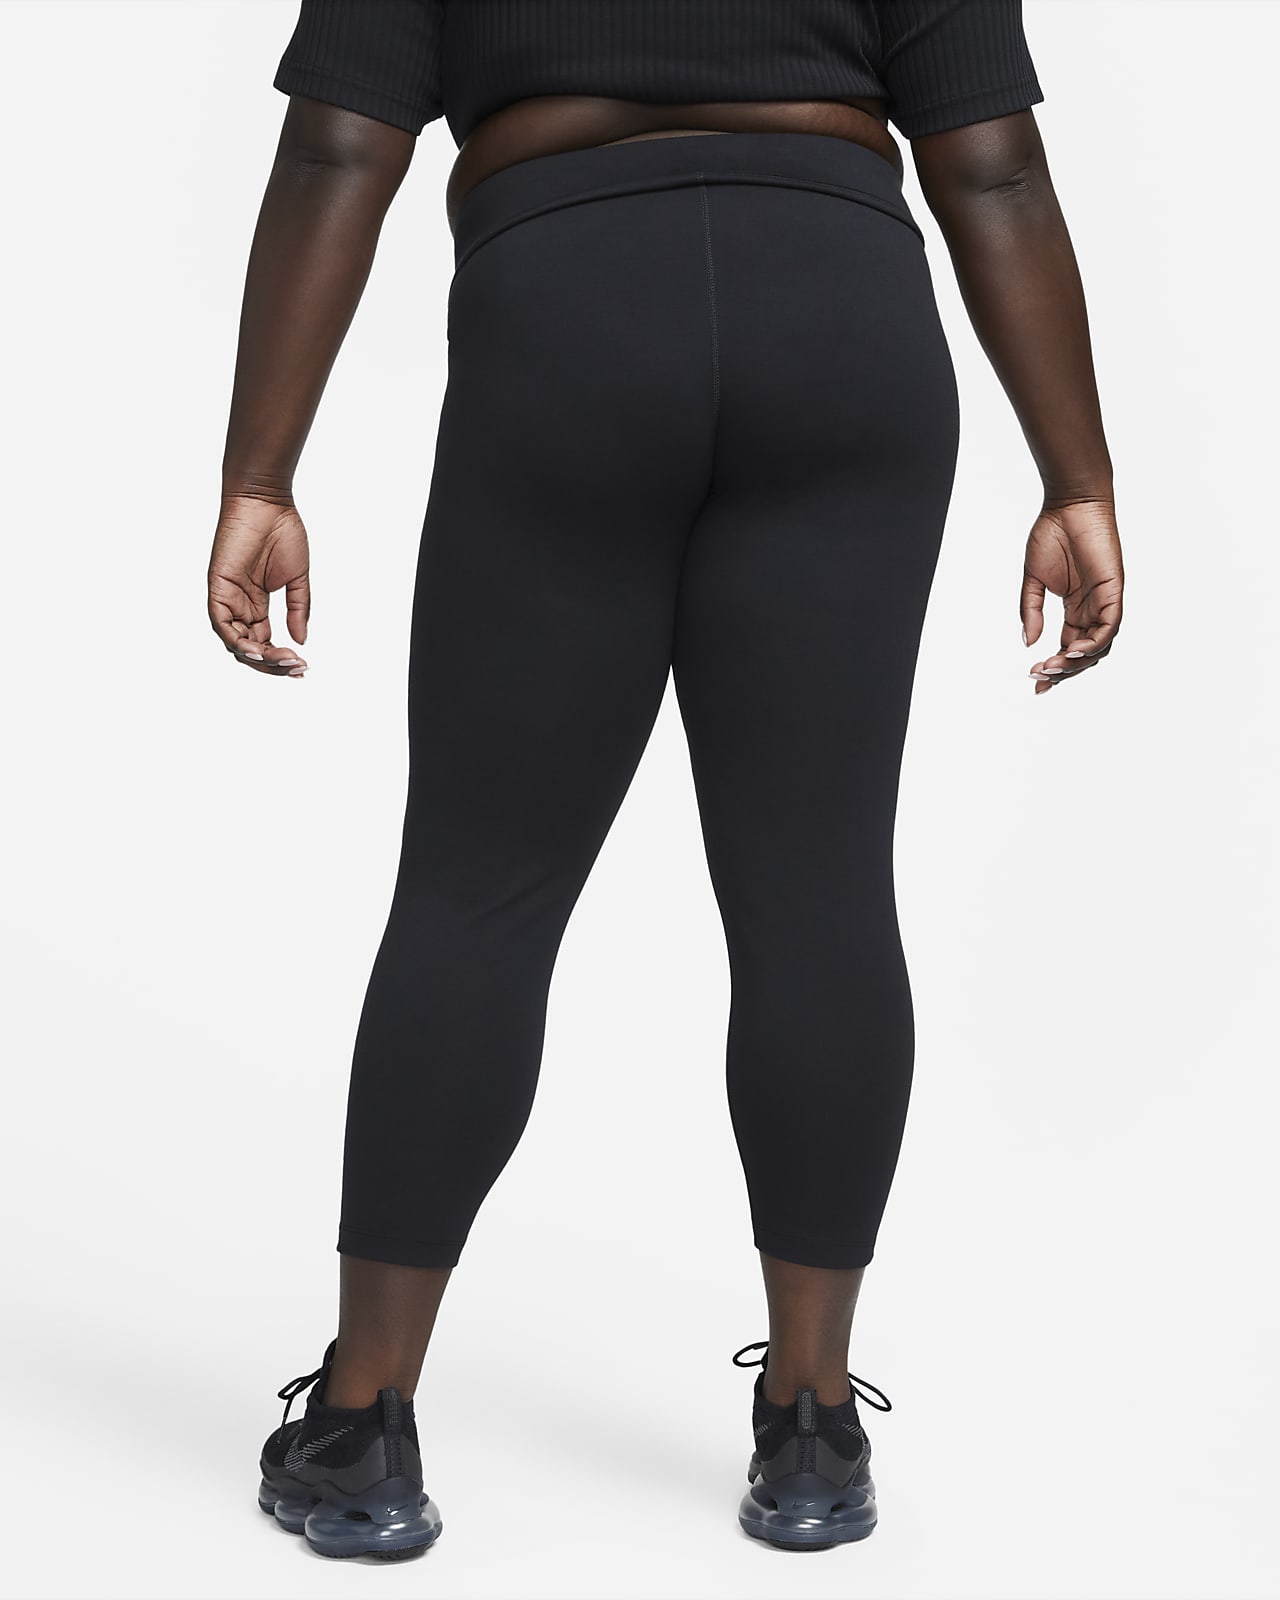 Nike Yoga Yüksek Belli 7/8 Kadın Taytı. Nike TR